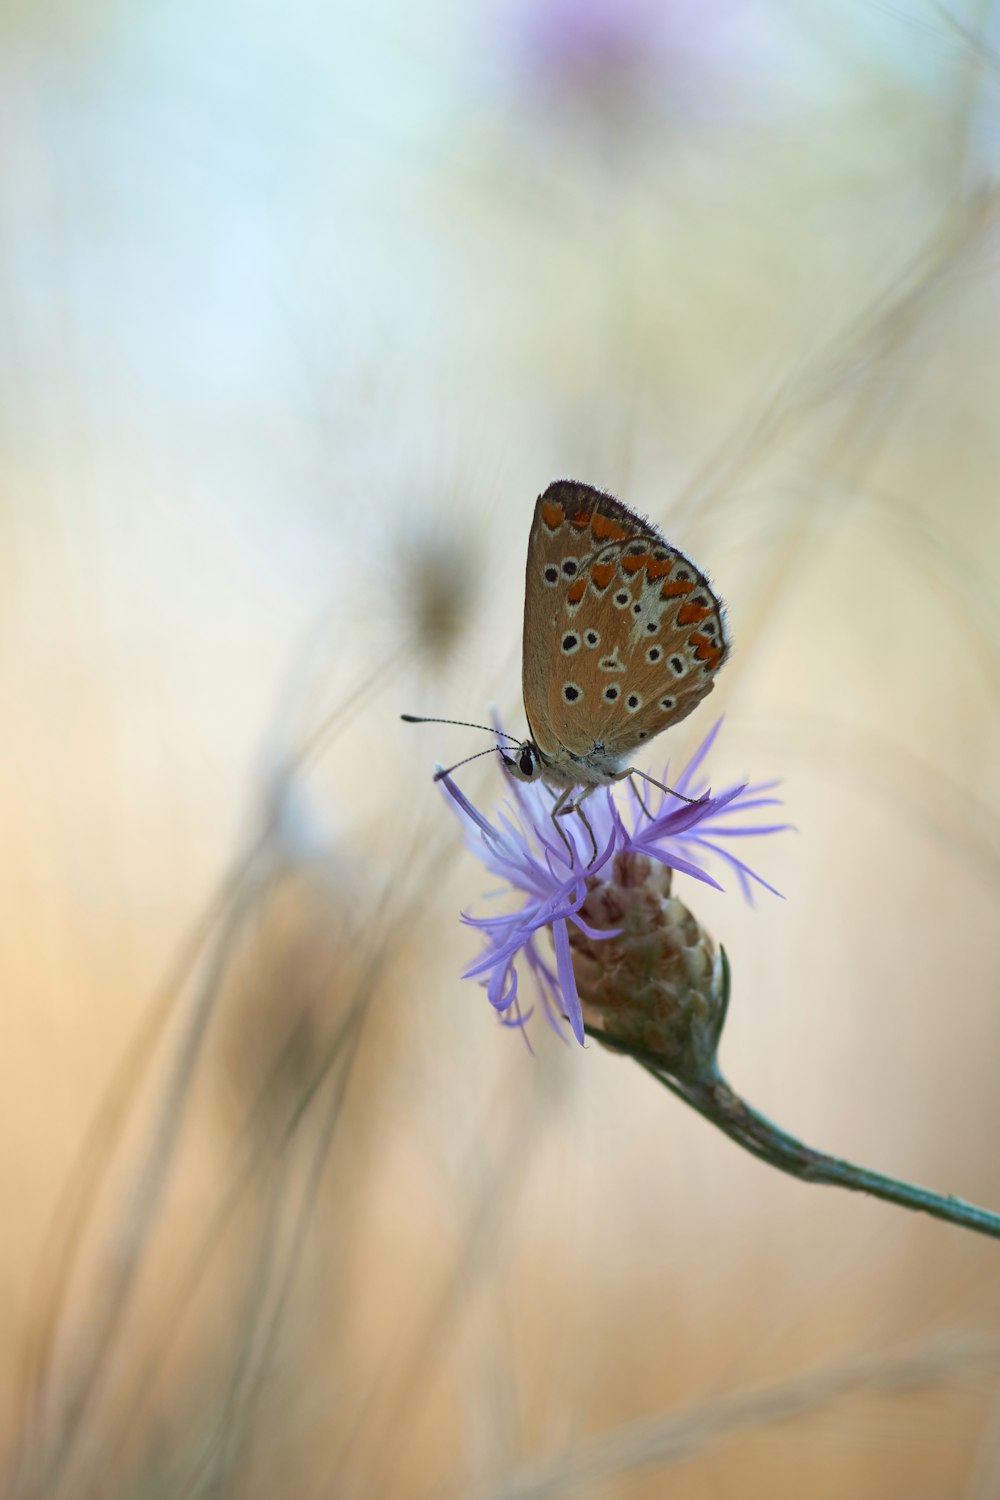 borboleta marrom e branca empoleirada na flor roxa em fotografia de perto durante o dia